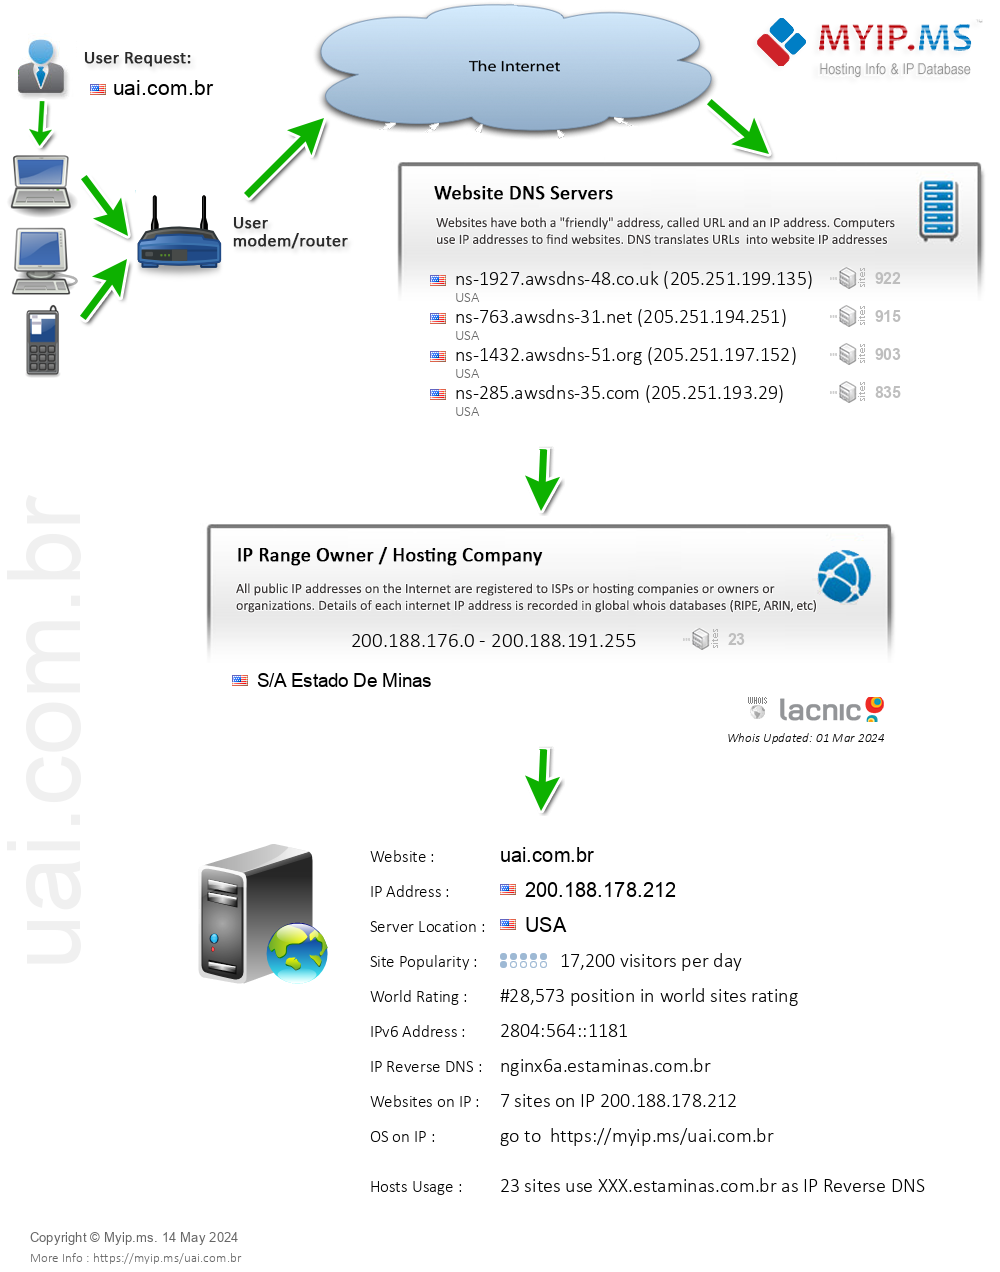 Uai.com.br - Website Hosting Visual IP Diagram